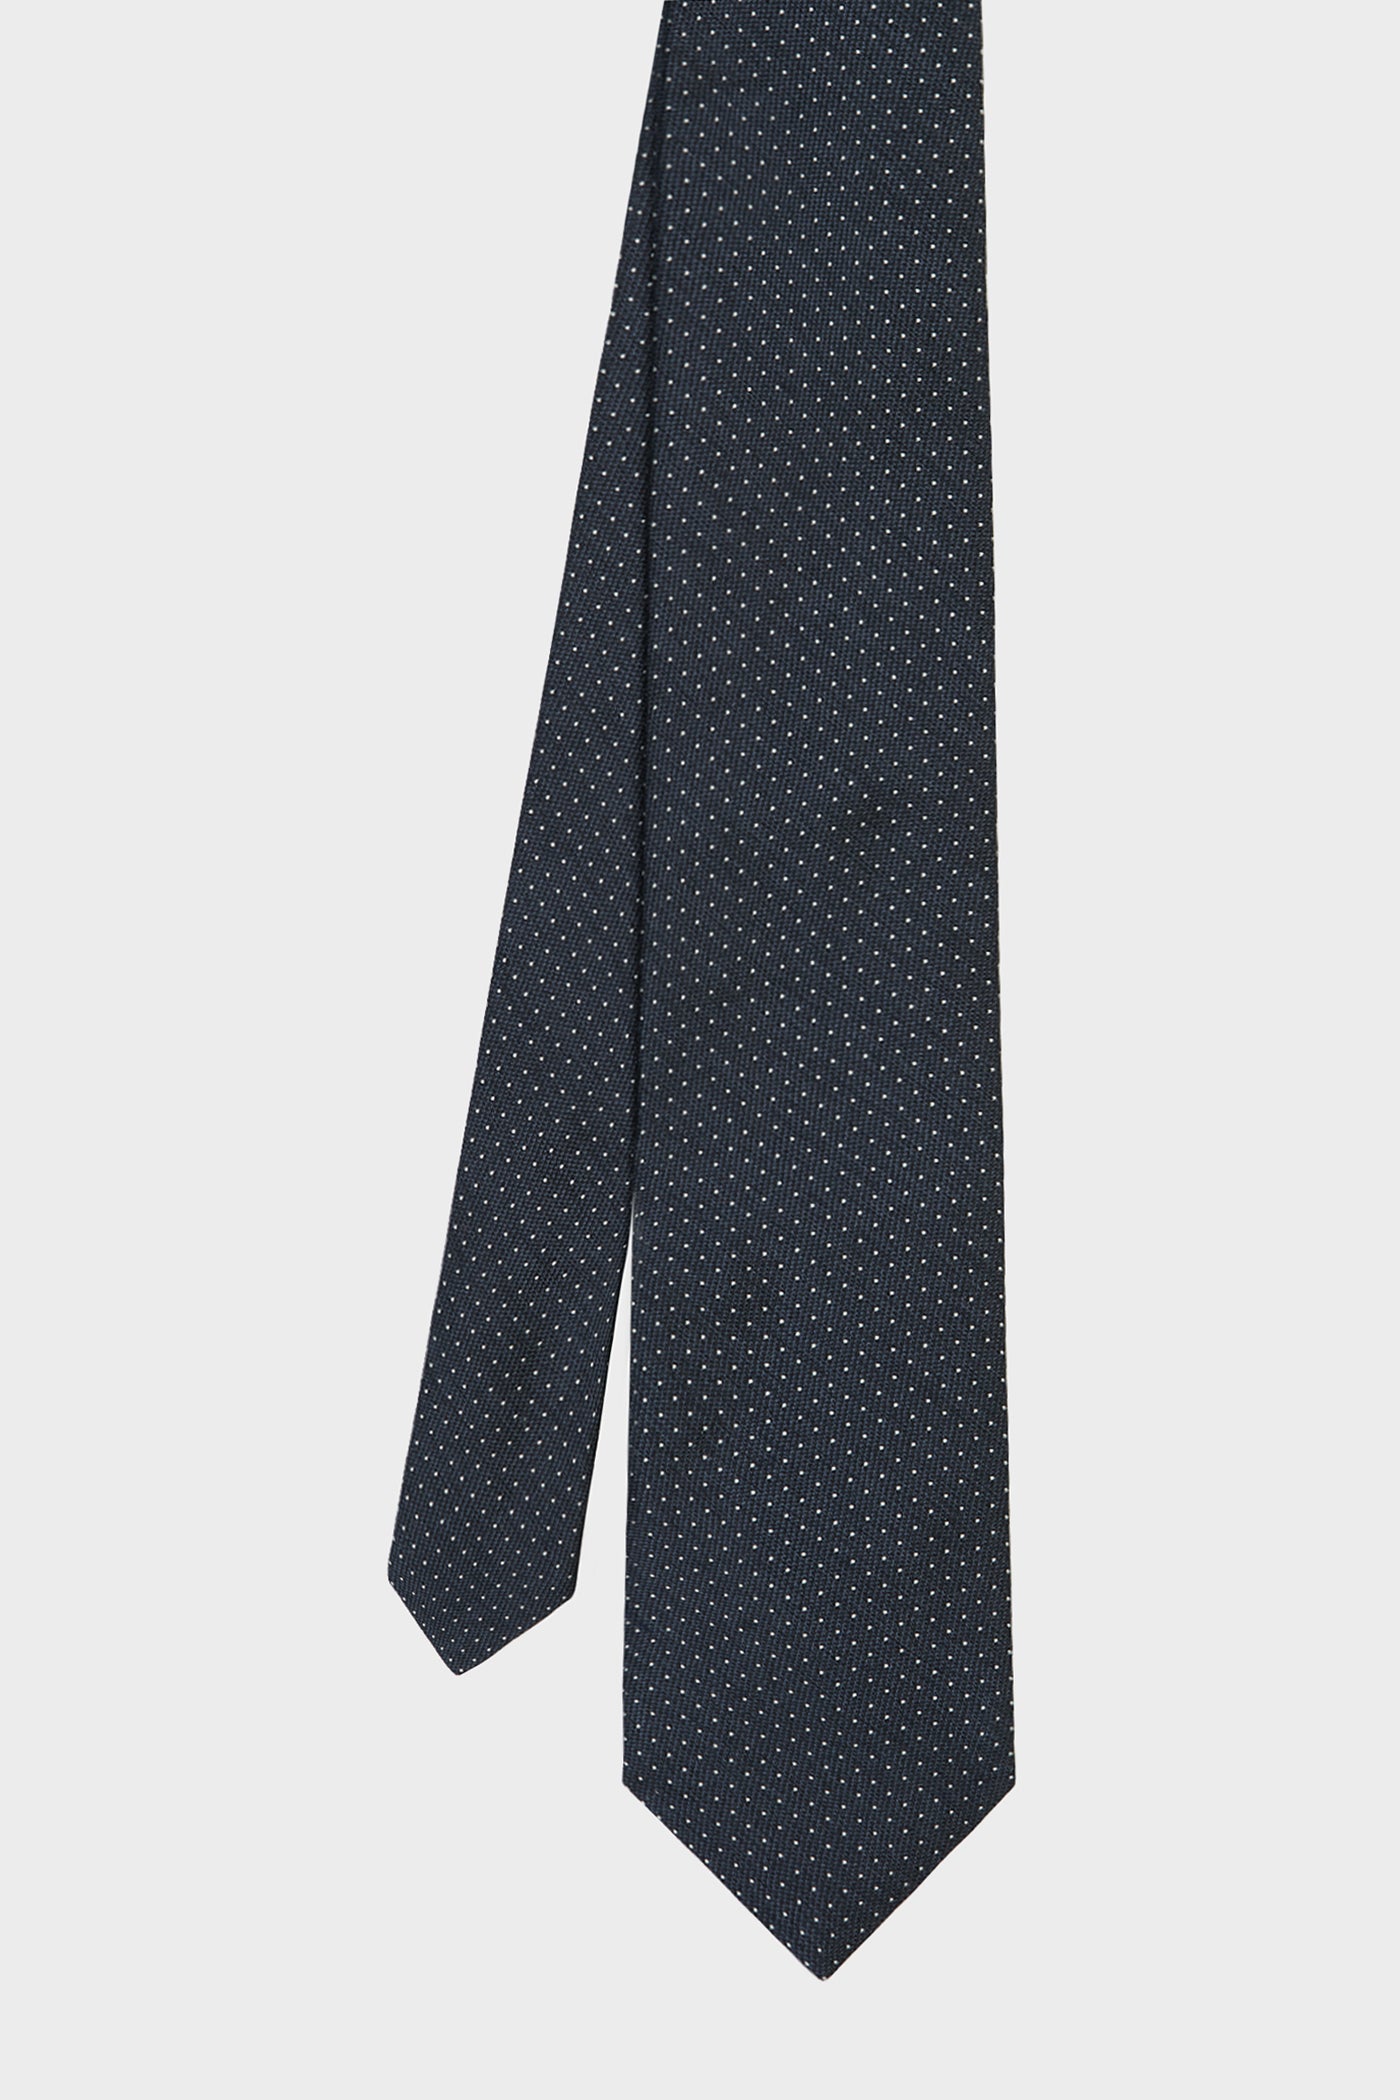 Cravate Picot Blanc Sur Navy